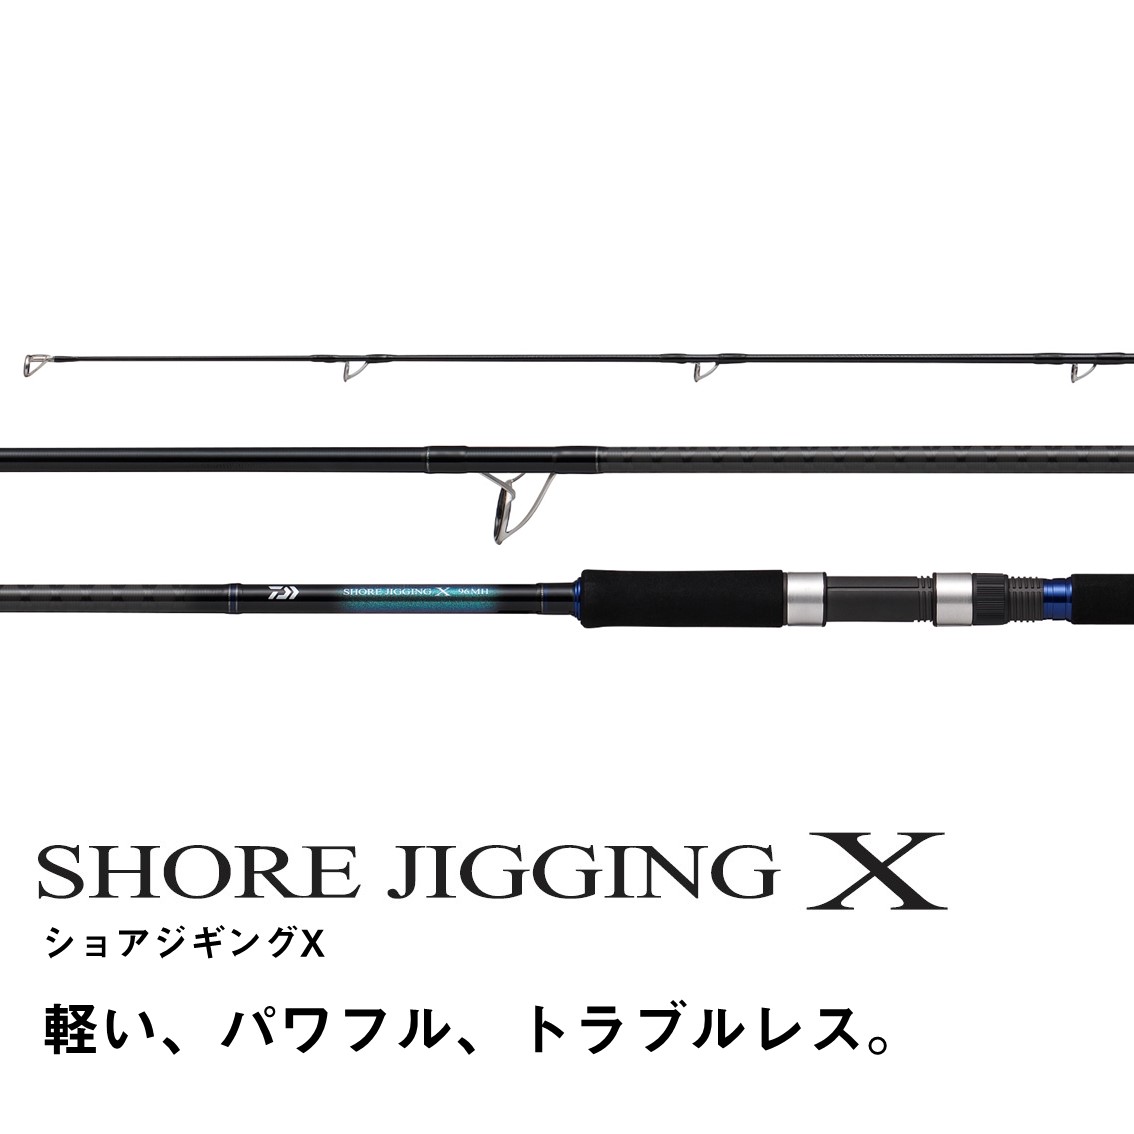 ダイワ ショアジギング X SHORE JIGGING X 96M (ショアジギング ロッド